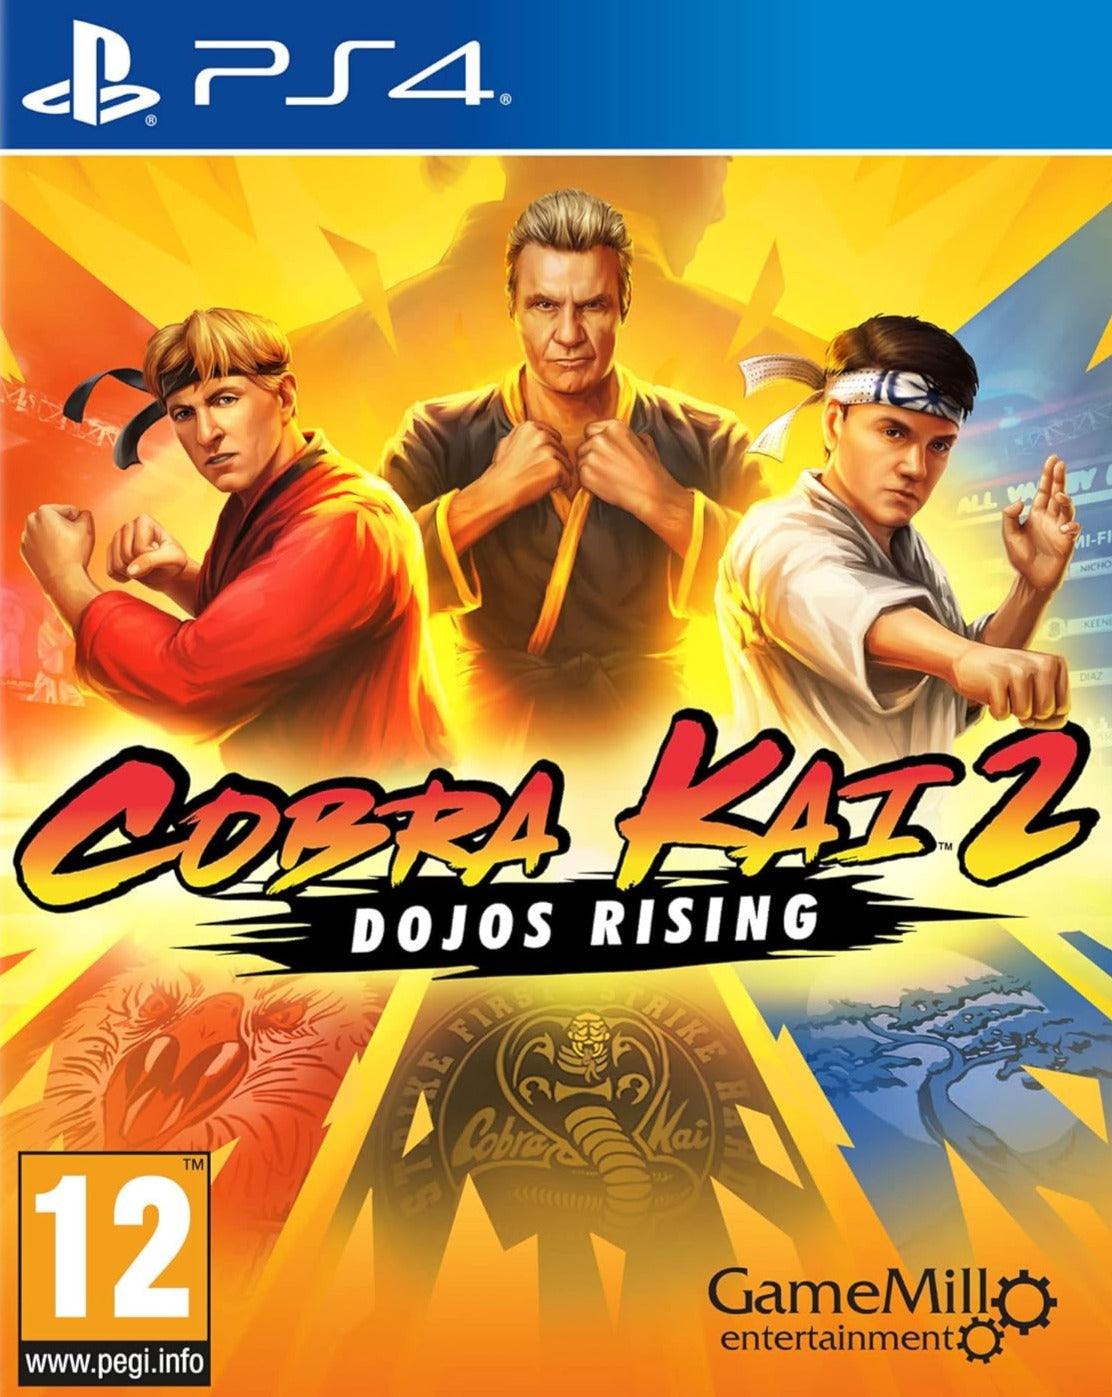 Cobra Kai 2: Dojos Rising / PS4 / Playstation 4 - GD Games 